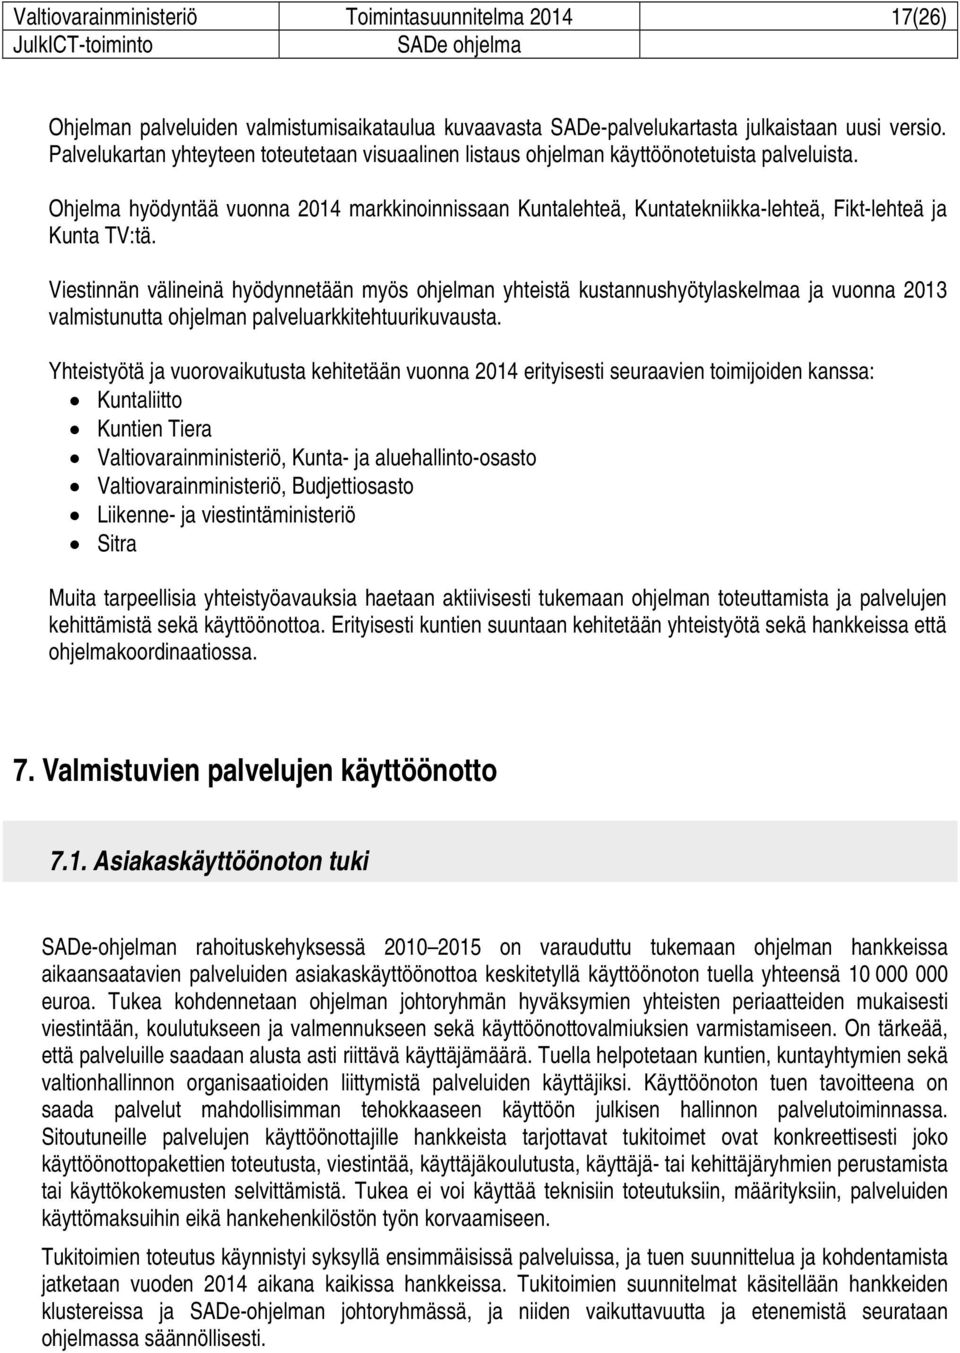 Ohjelma hyödyntää vuonna 2014 markkinoinnissaan Kuntalehteä, Kuntatekniikka-lehteä, Fikt-lehteä ja Kunta TV:tä.